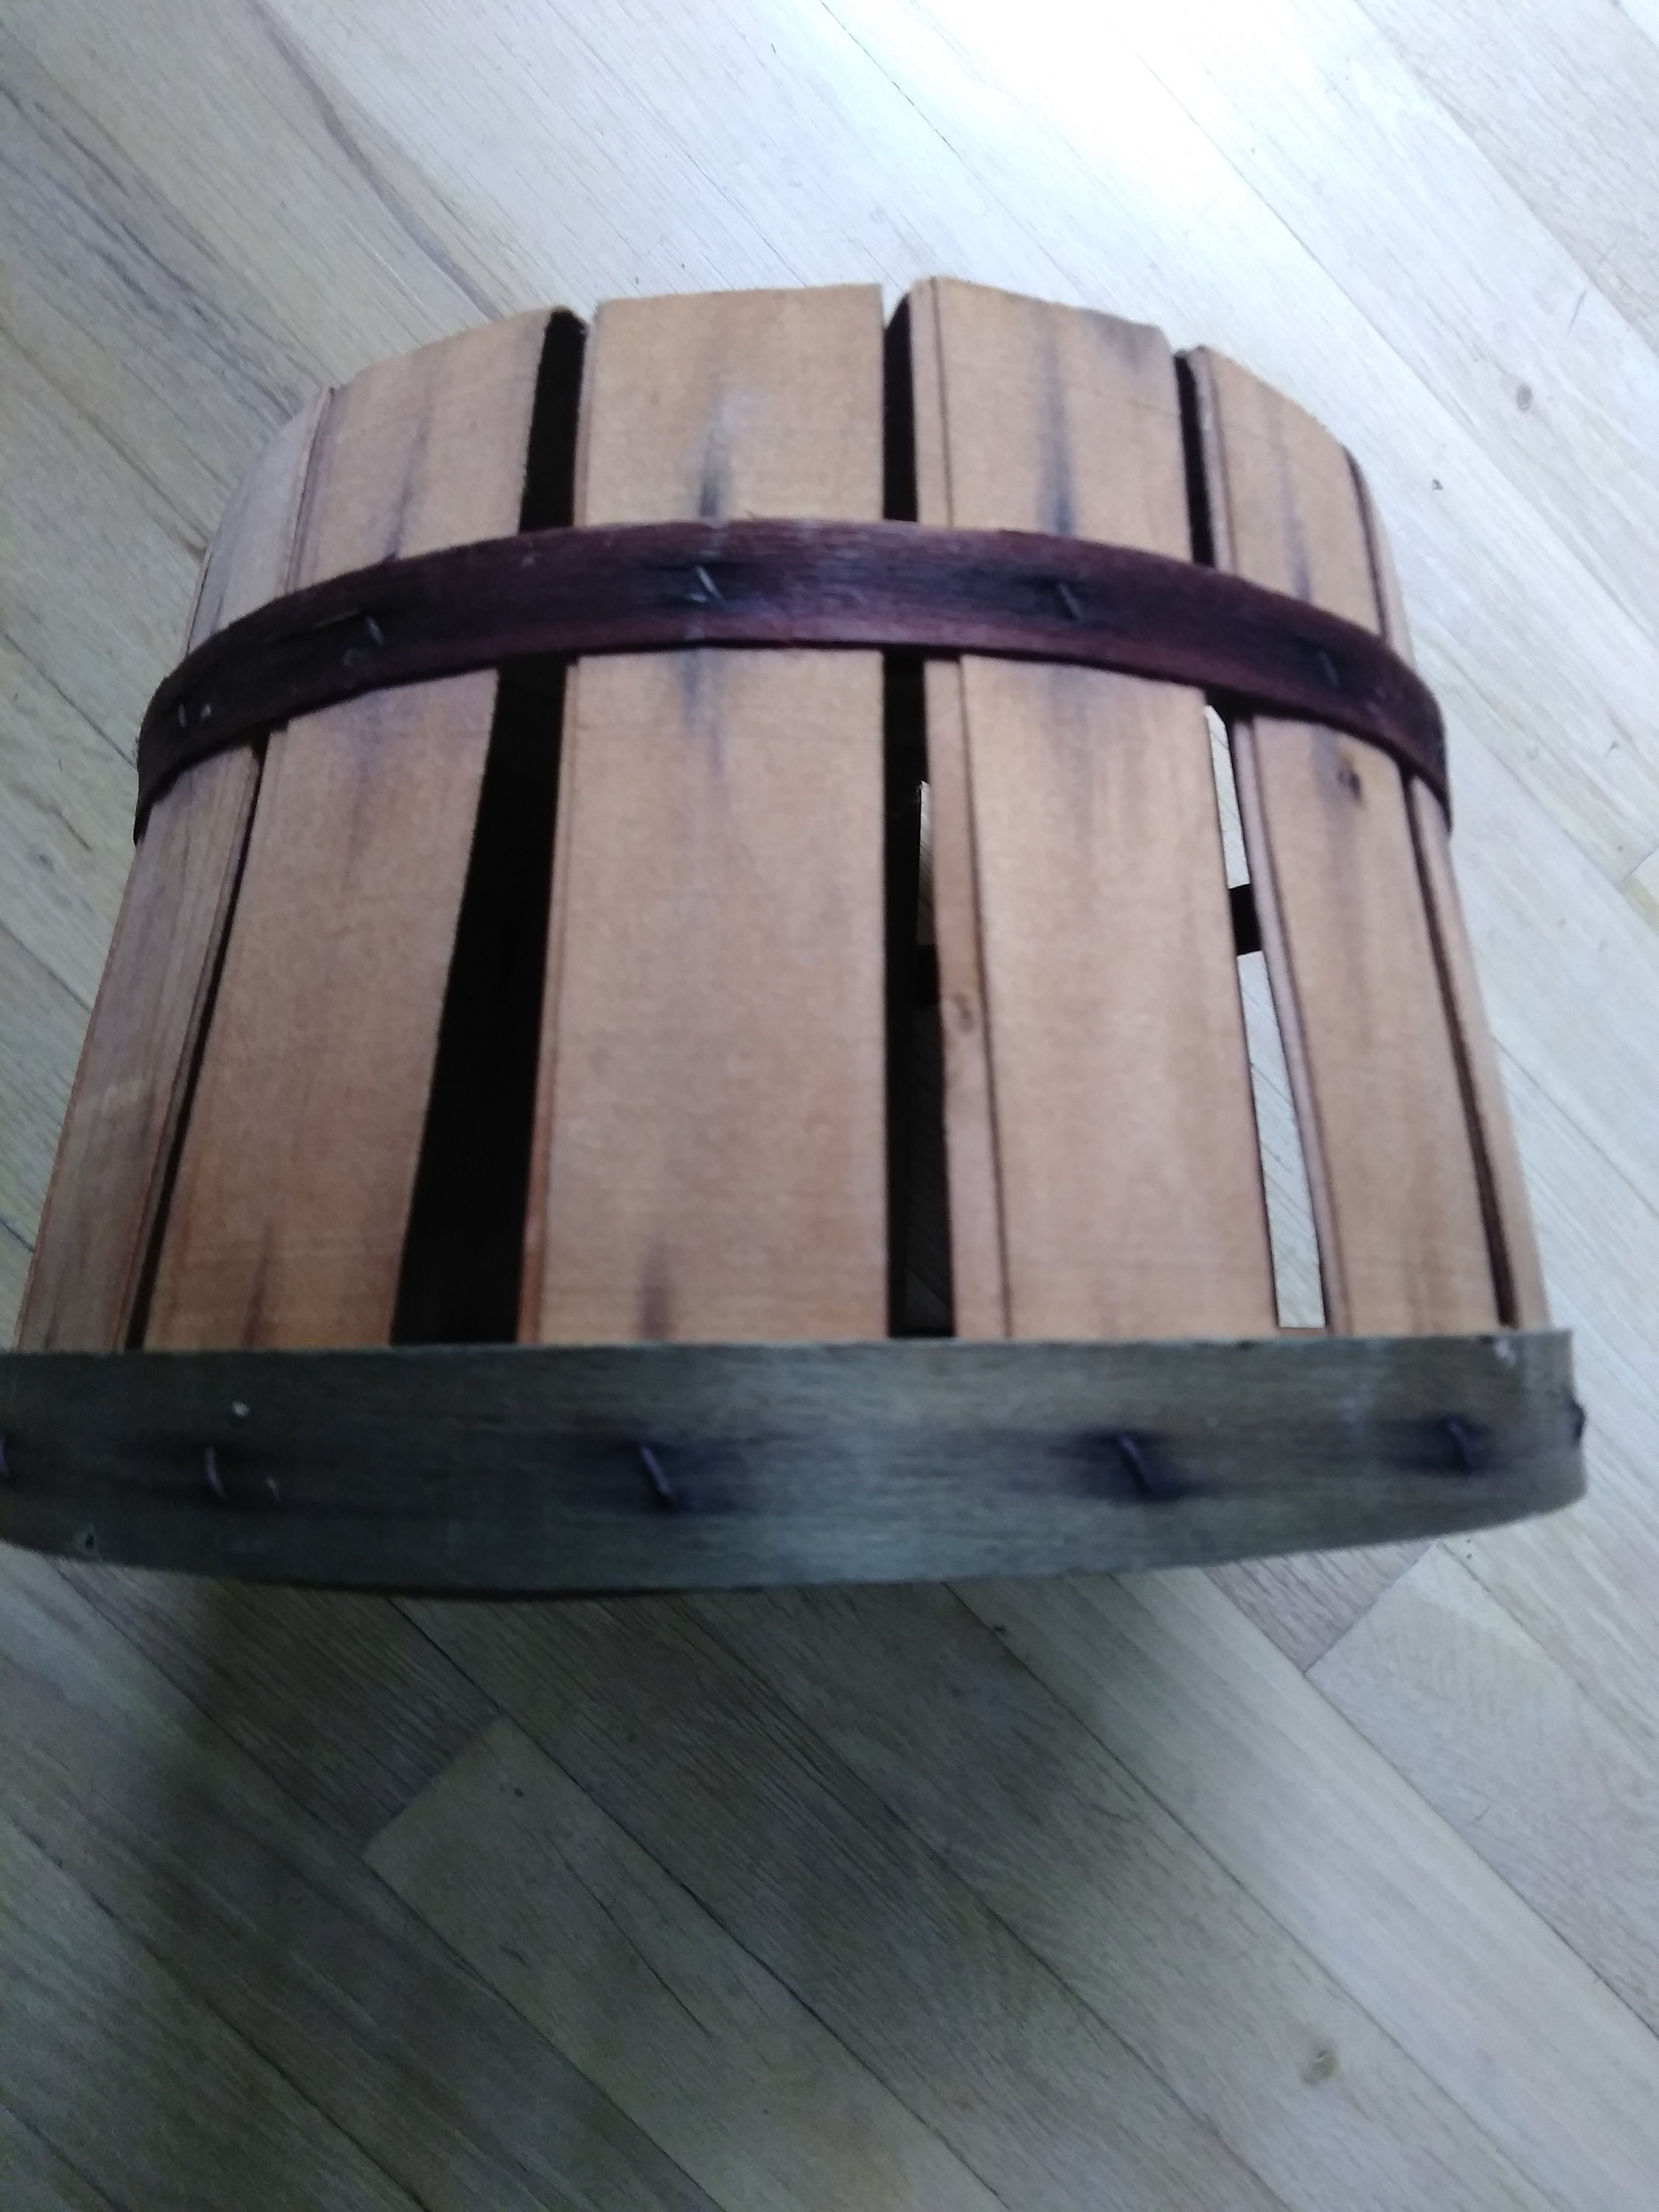 Housewarming Gift Basket - Small – Birchwood Laser & Design